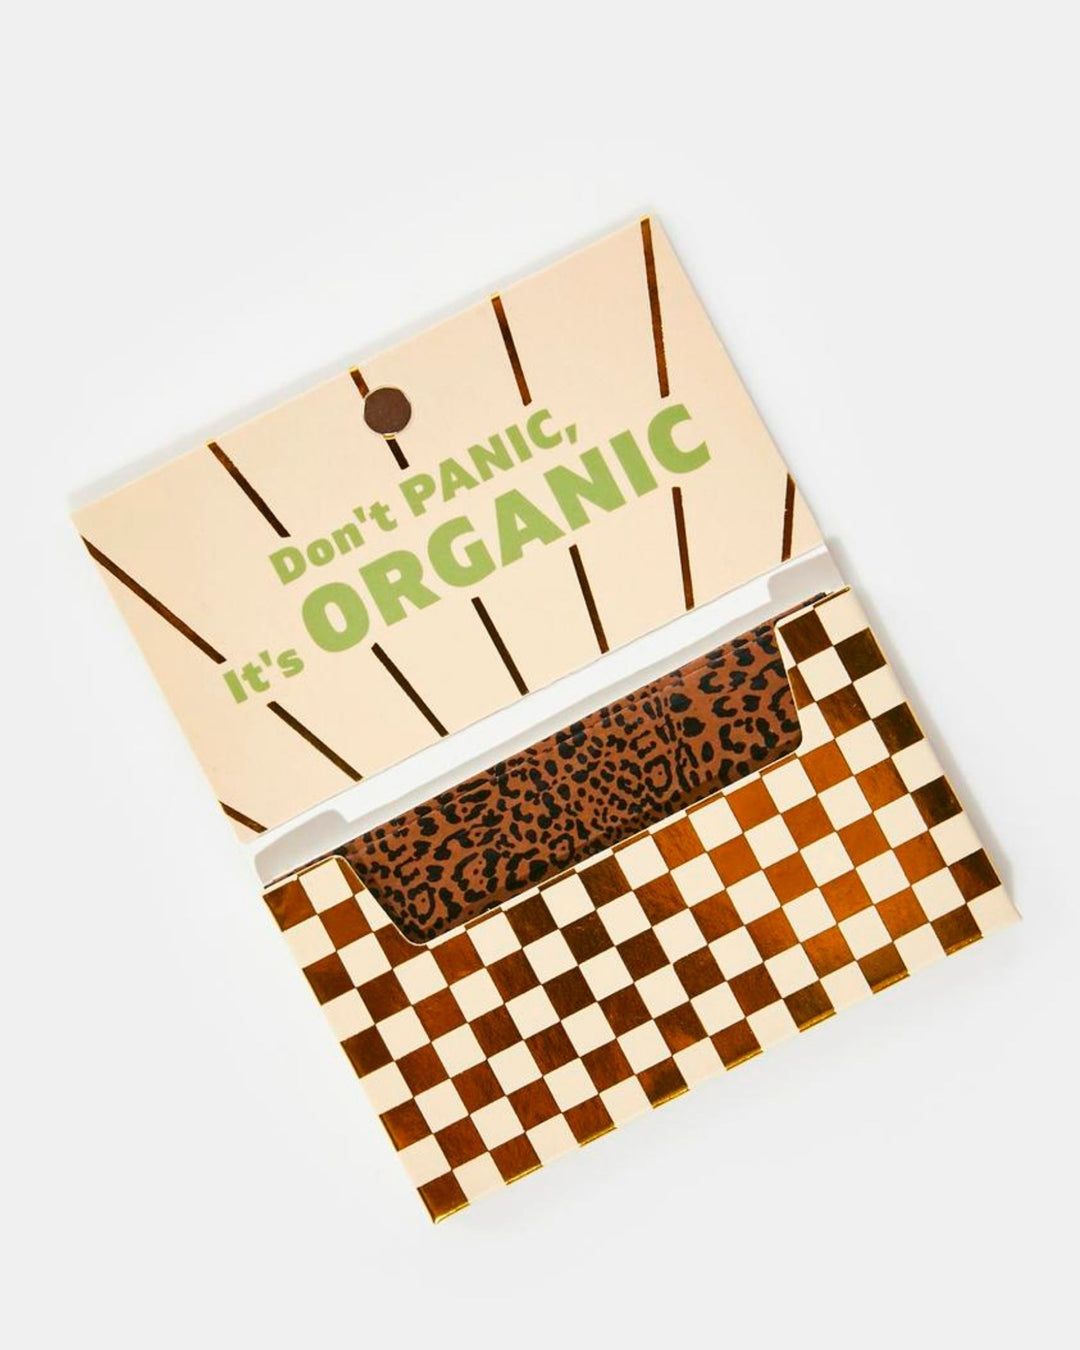 Field Trip leopard pattern rolling paper booklet.